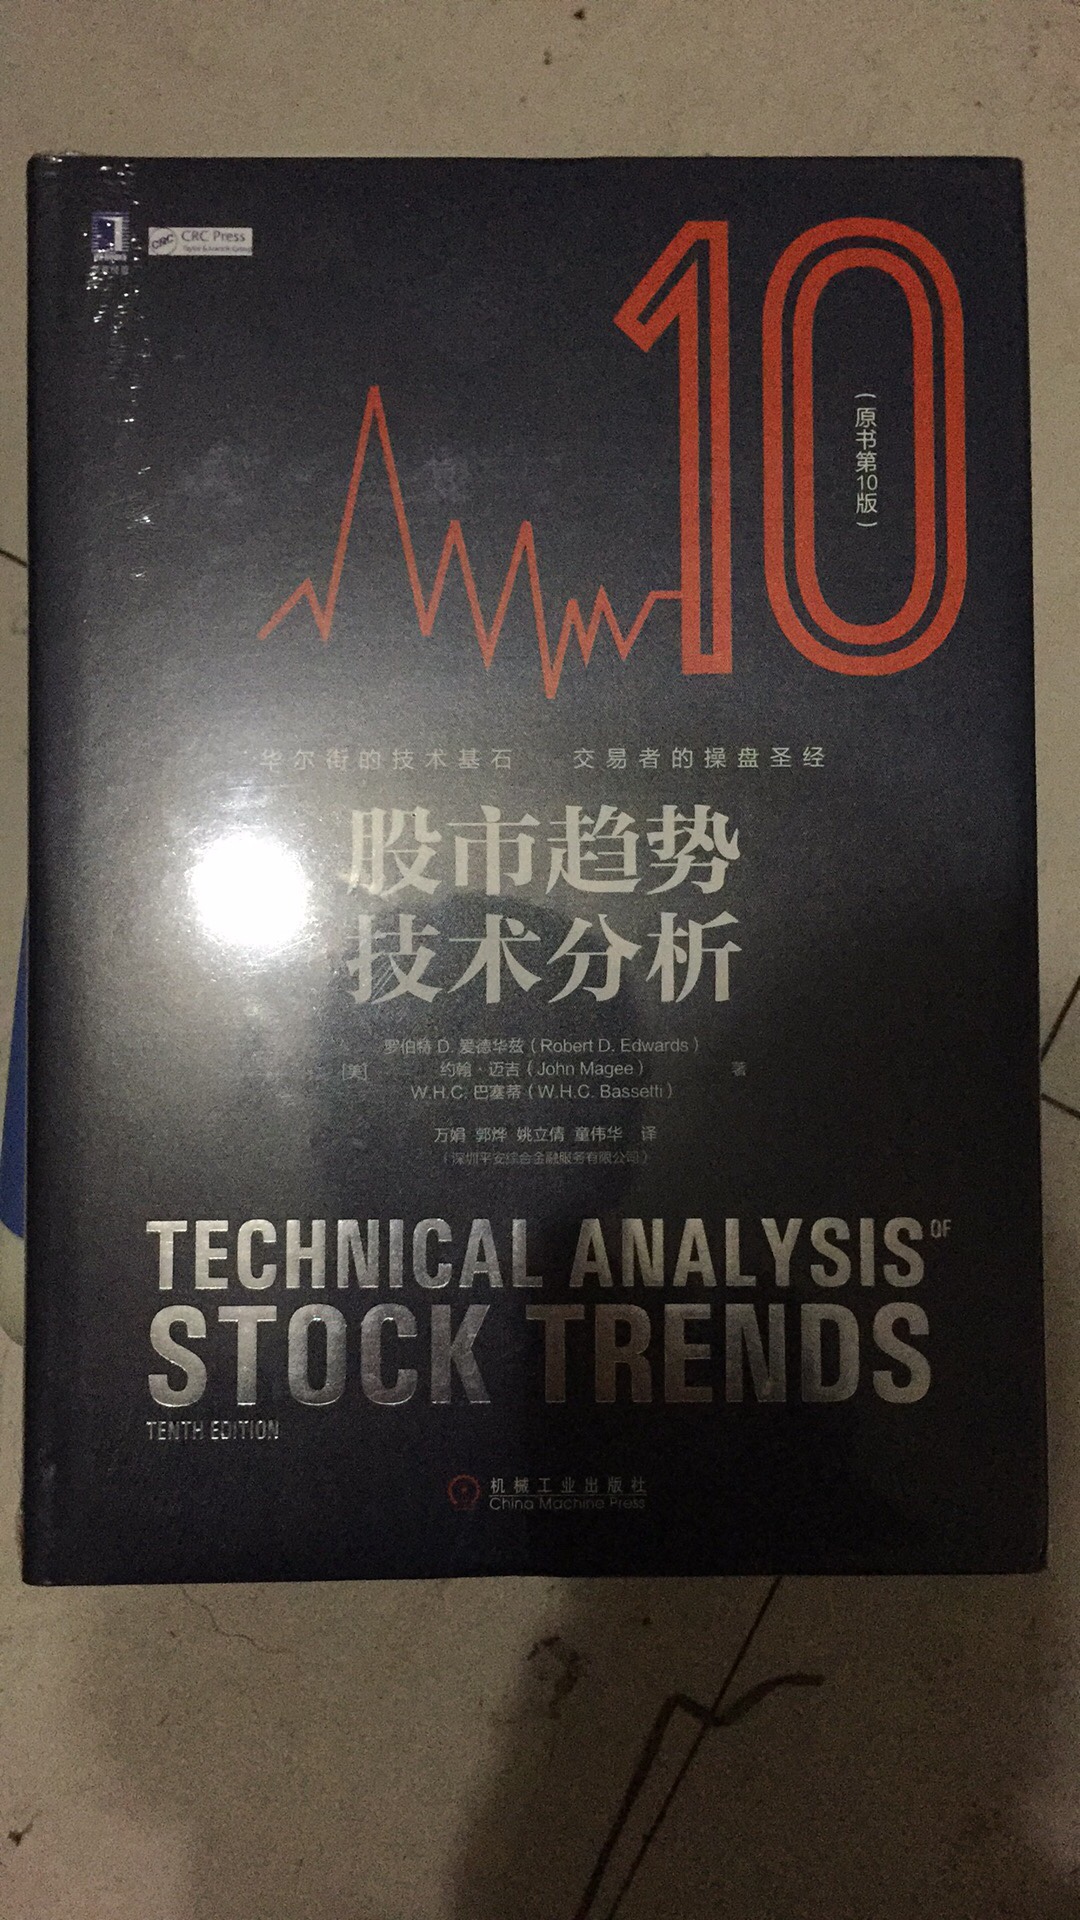 技术分析在中国股市比较适用，灵活适合小股民学习